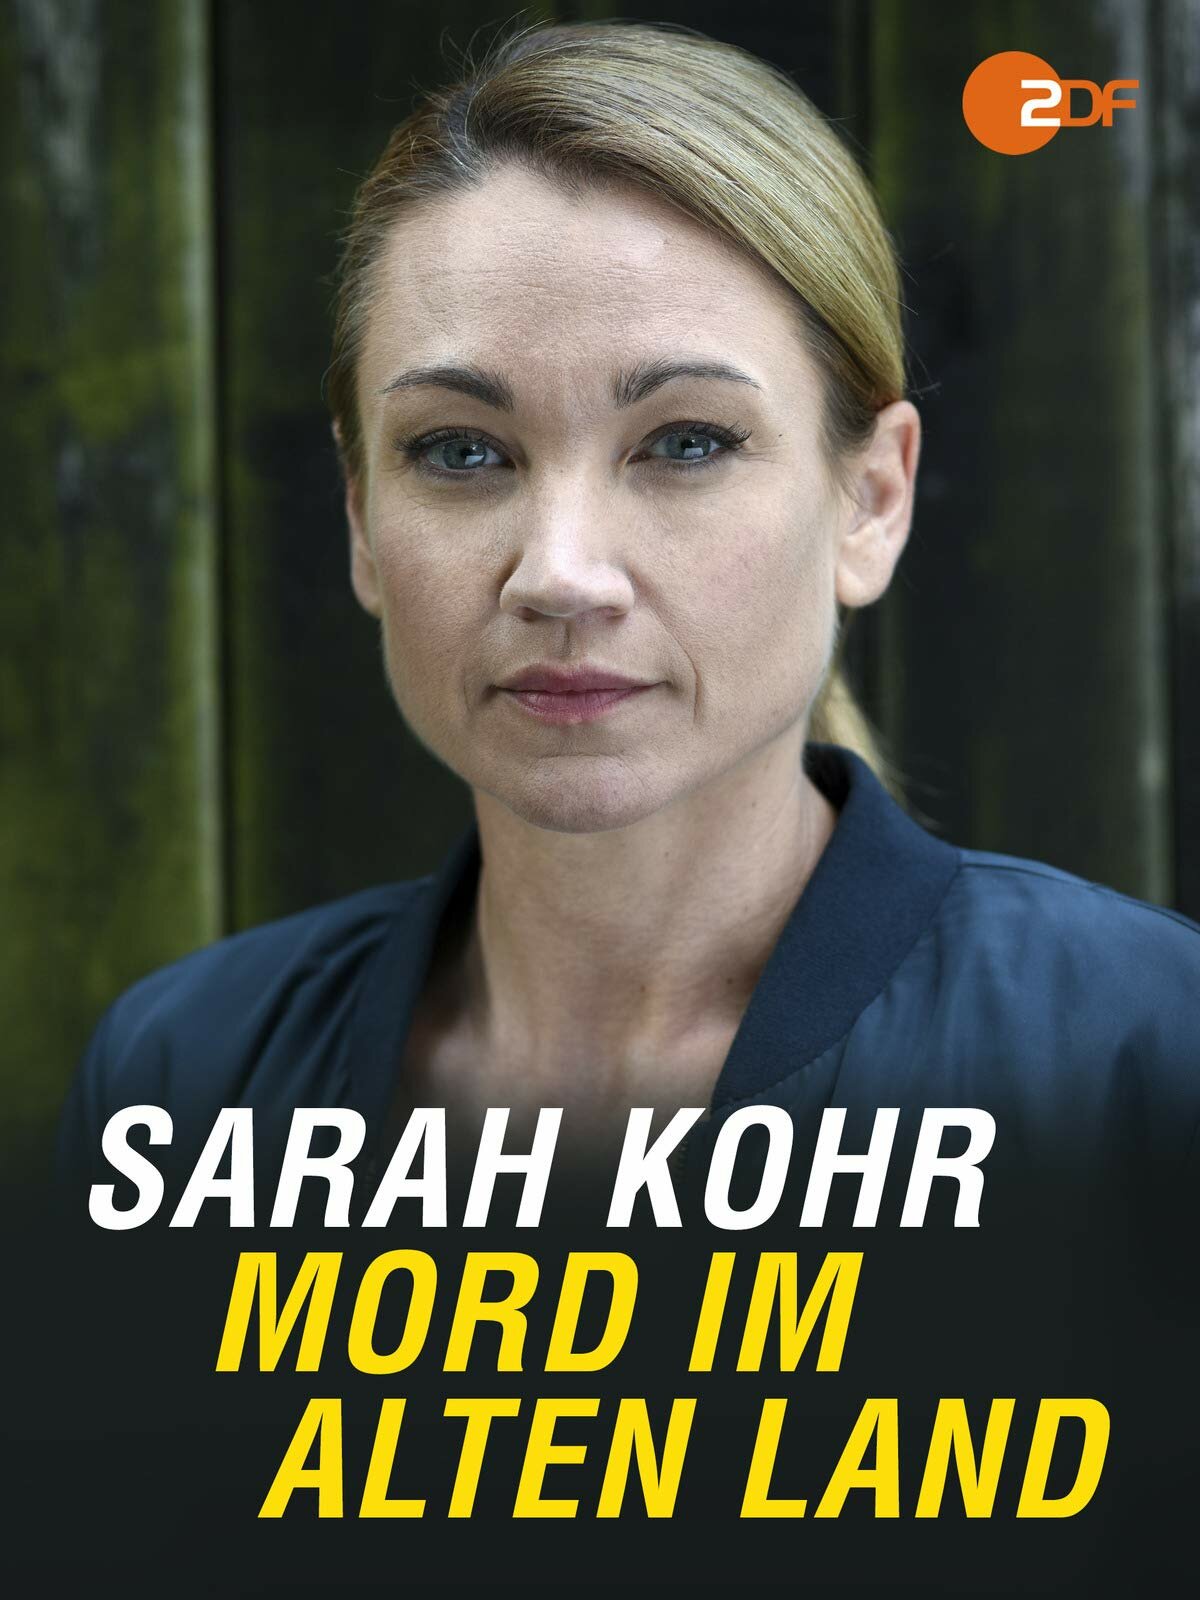 Sarah Kohr ne zaman